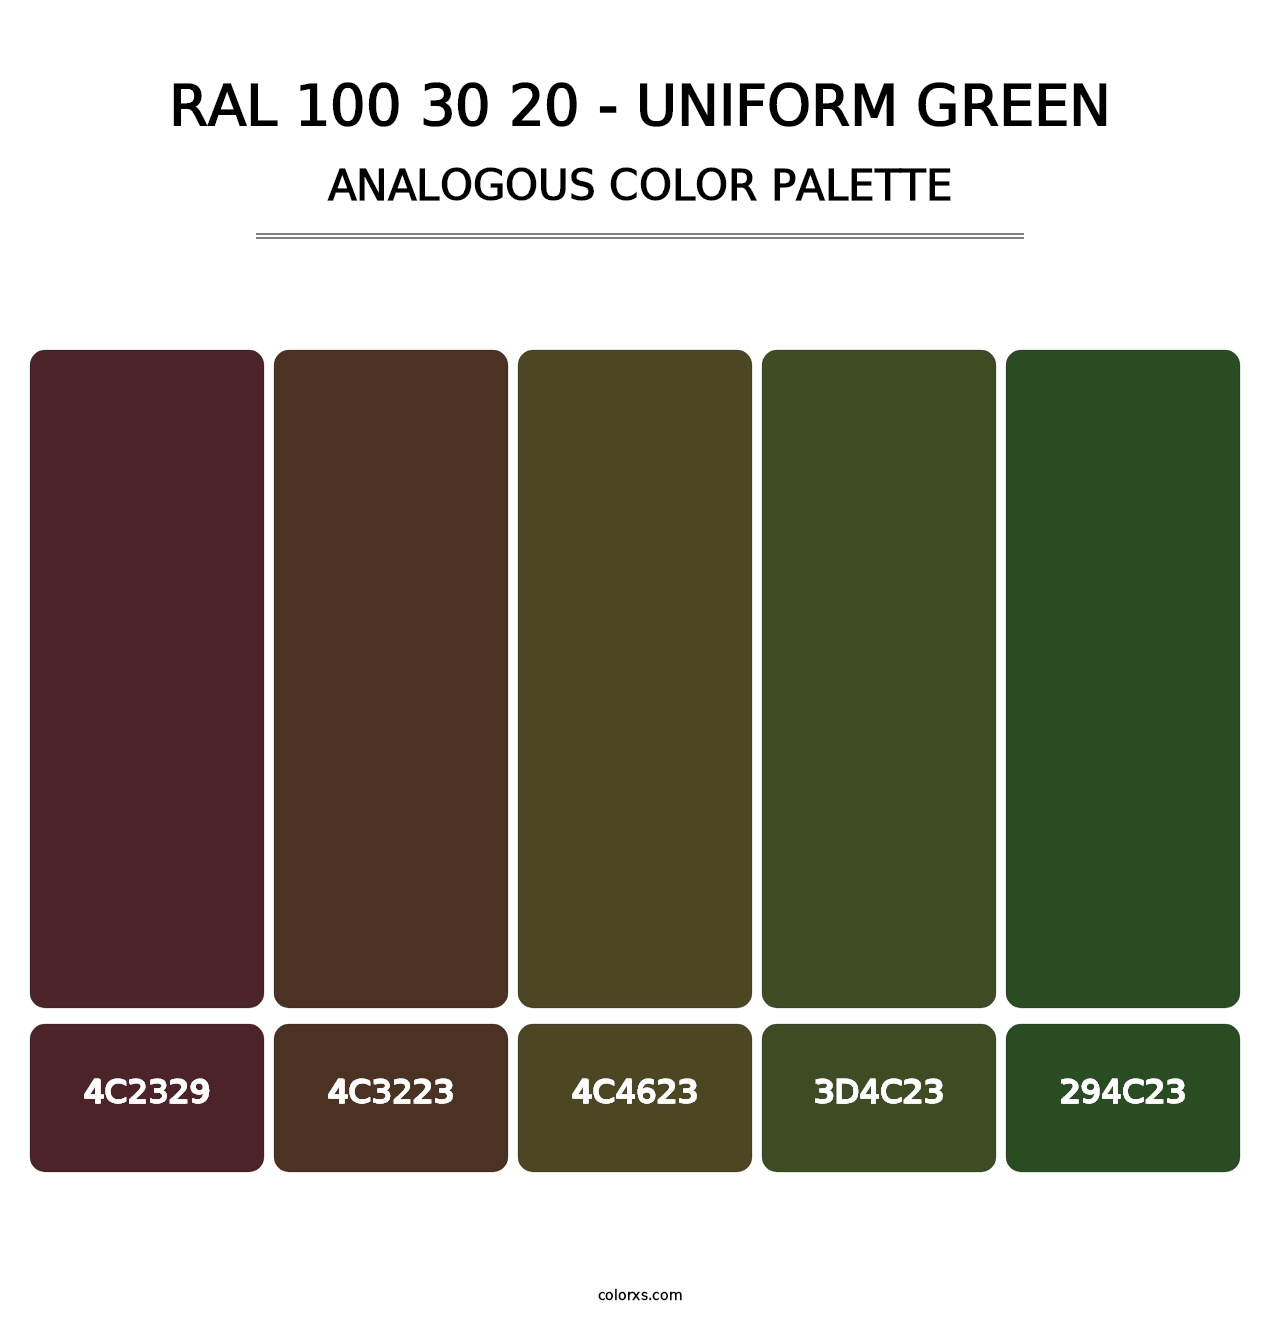 RAL 100 30 20 - Uniform Green - Analogous Color Palette